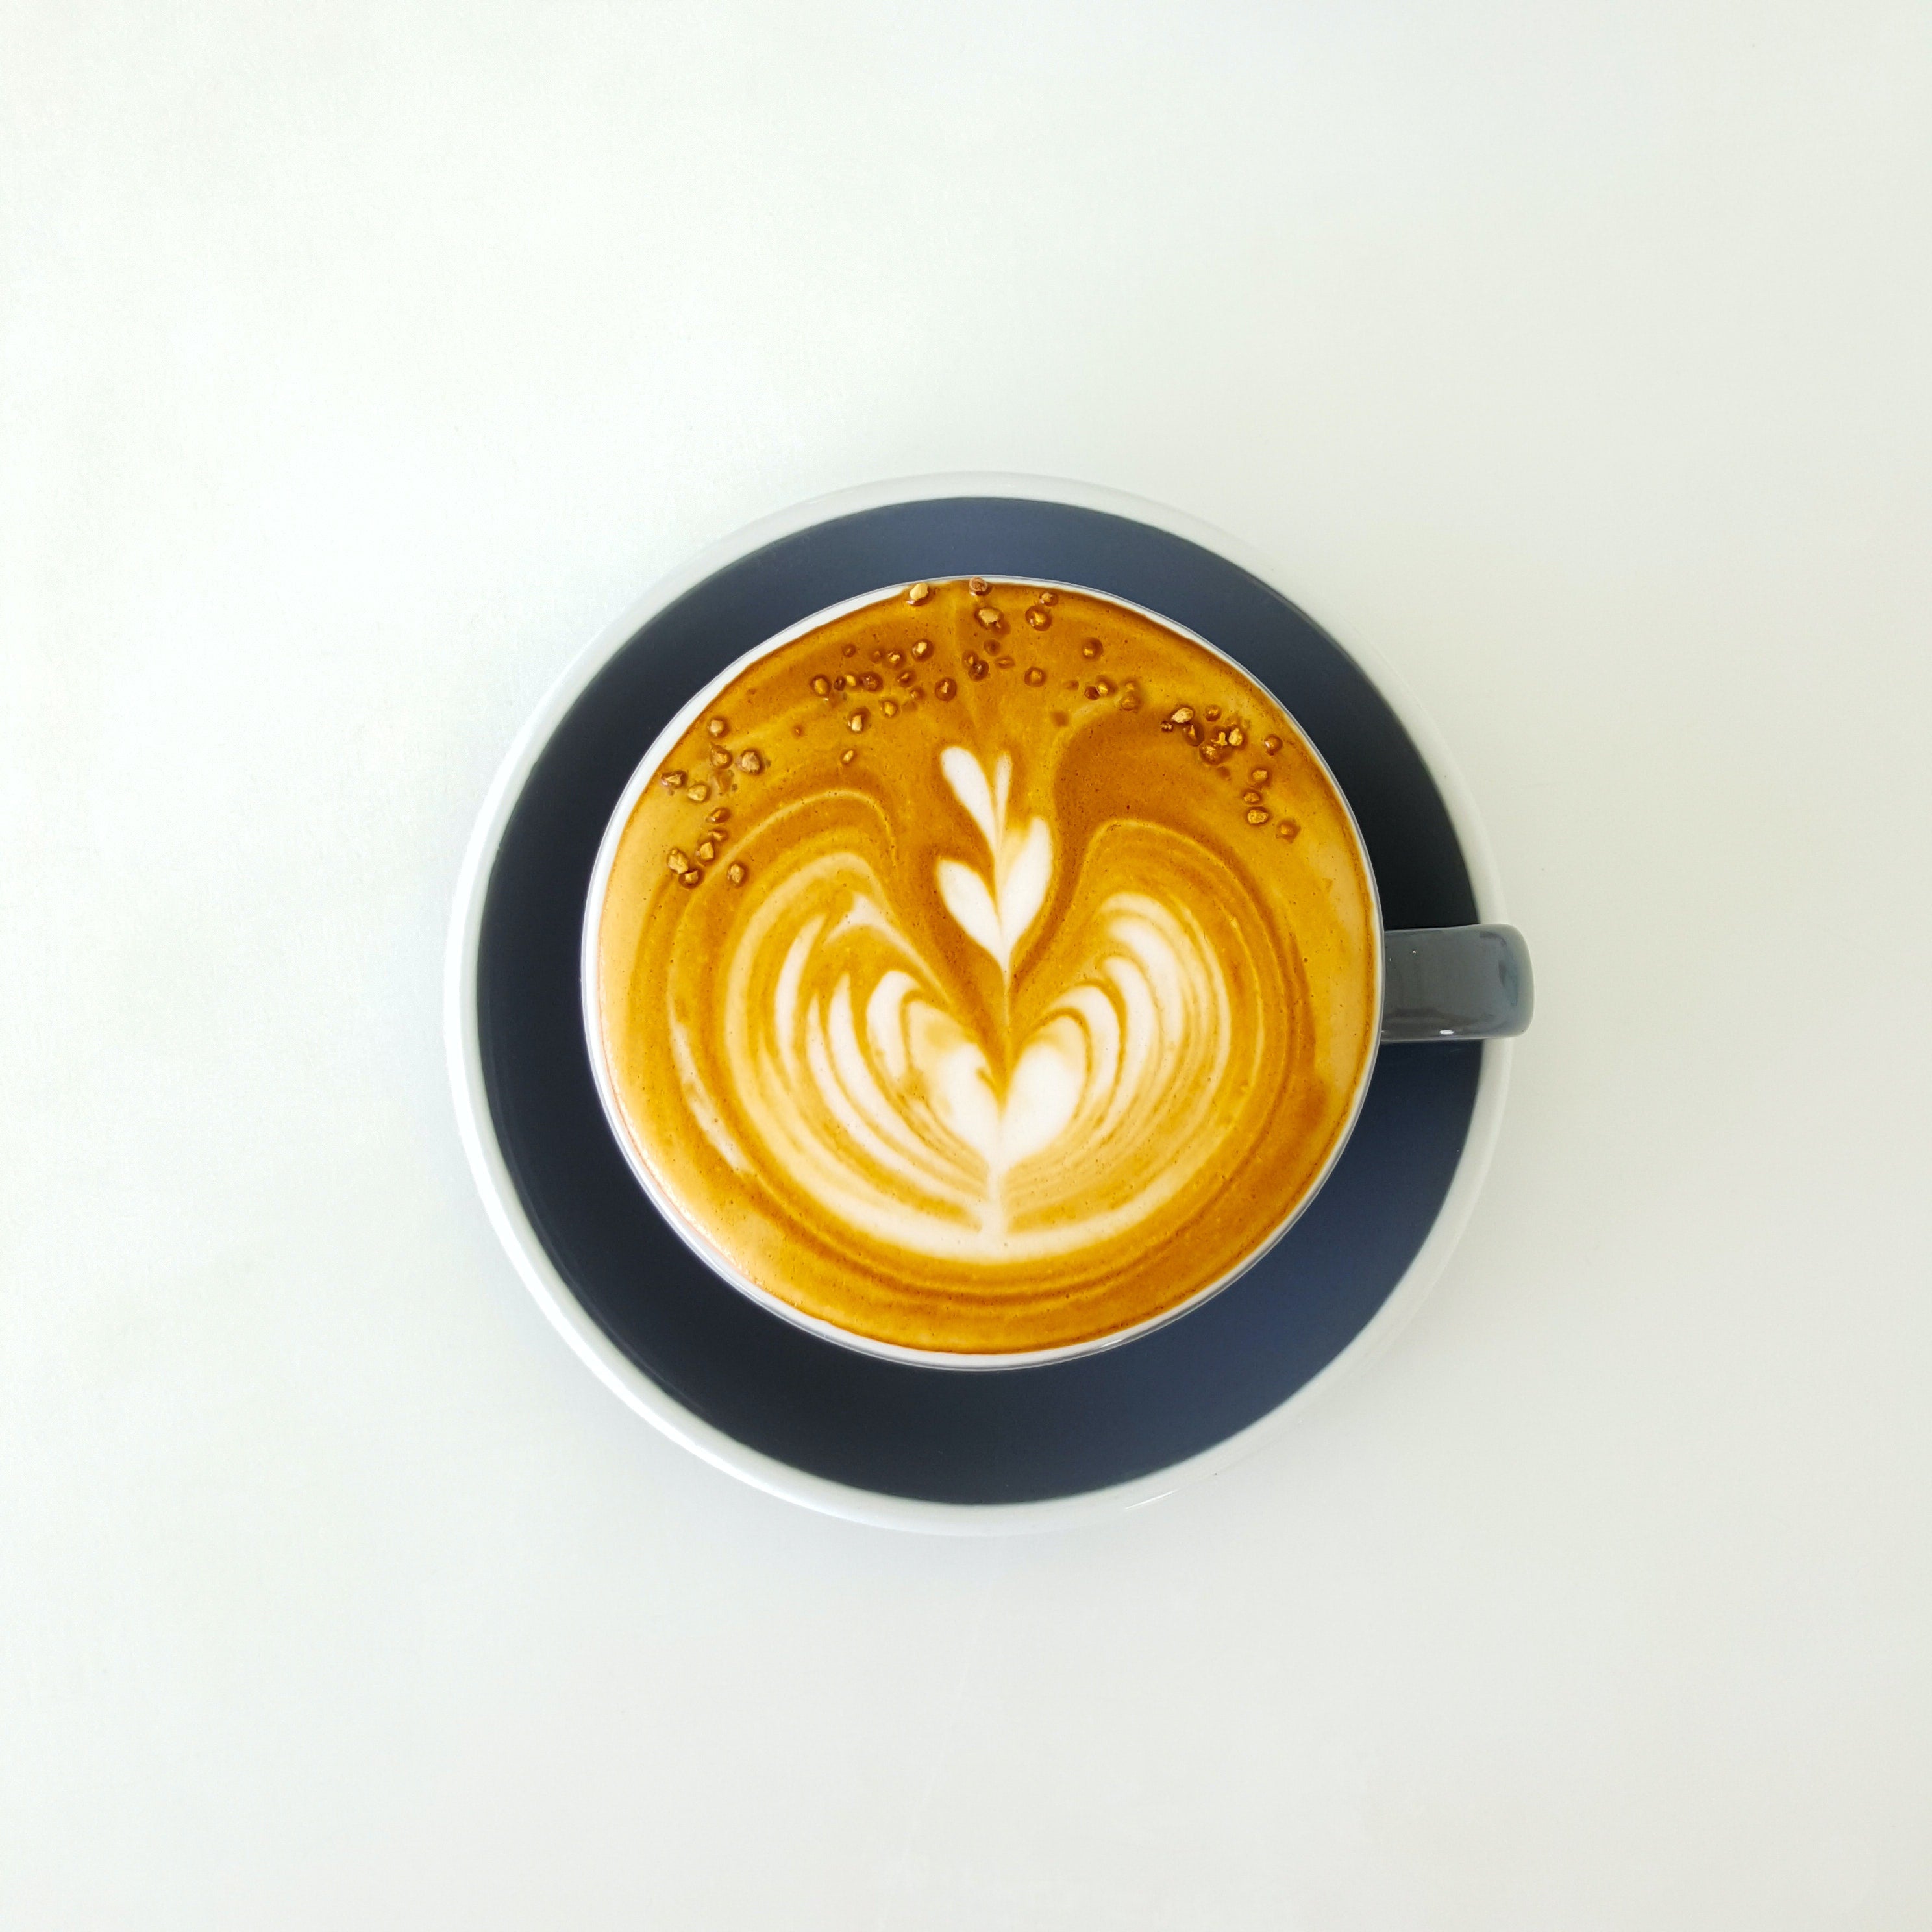 The perfect Nespresso pod coffee